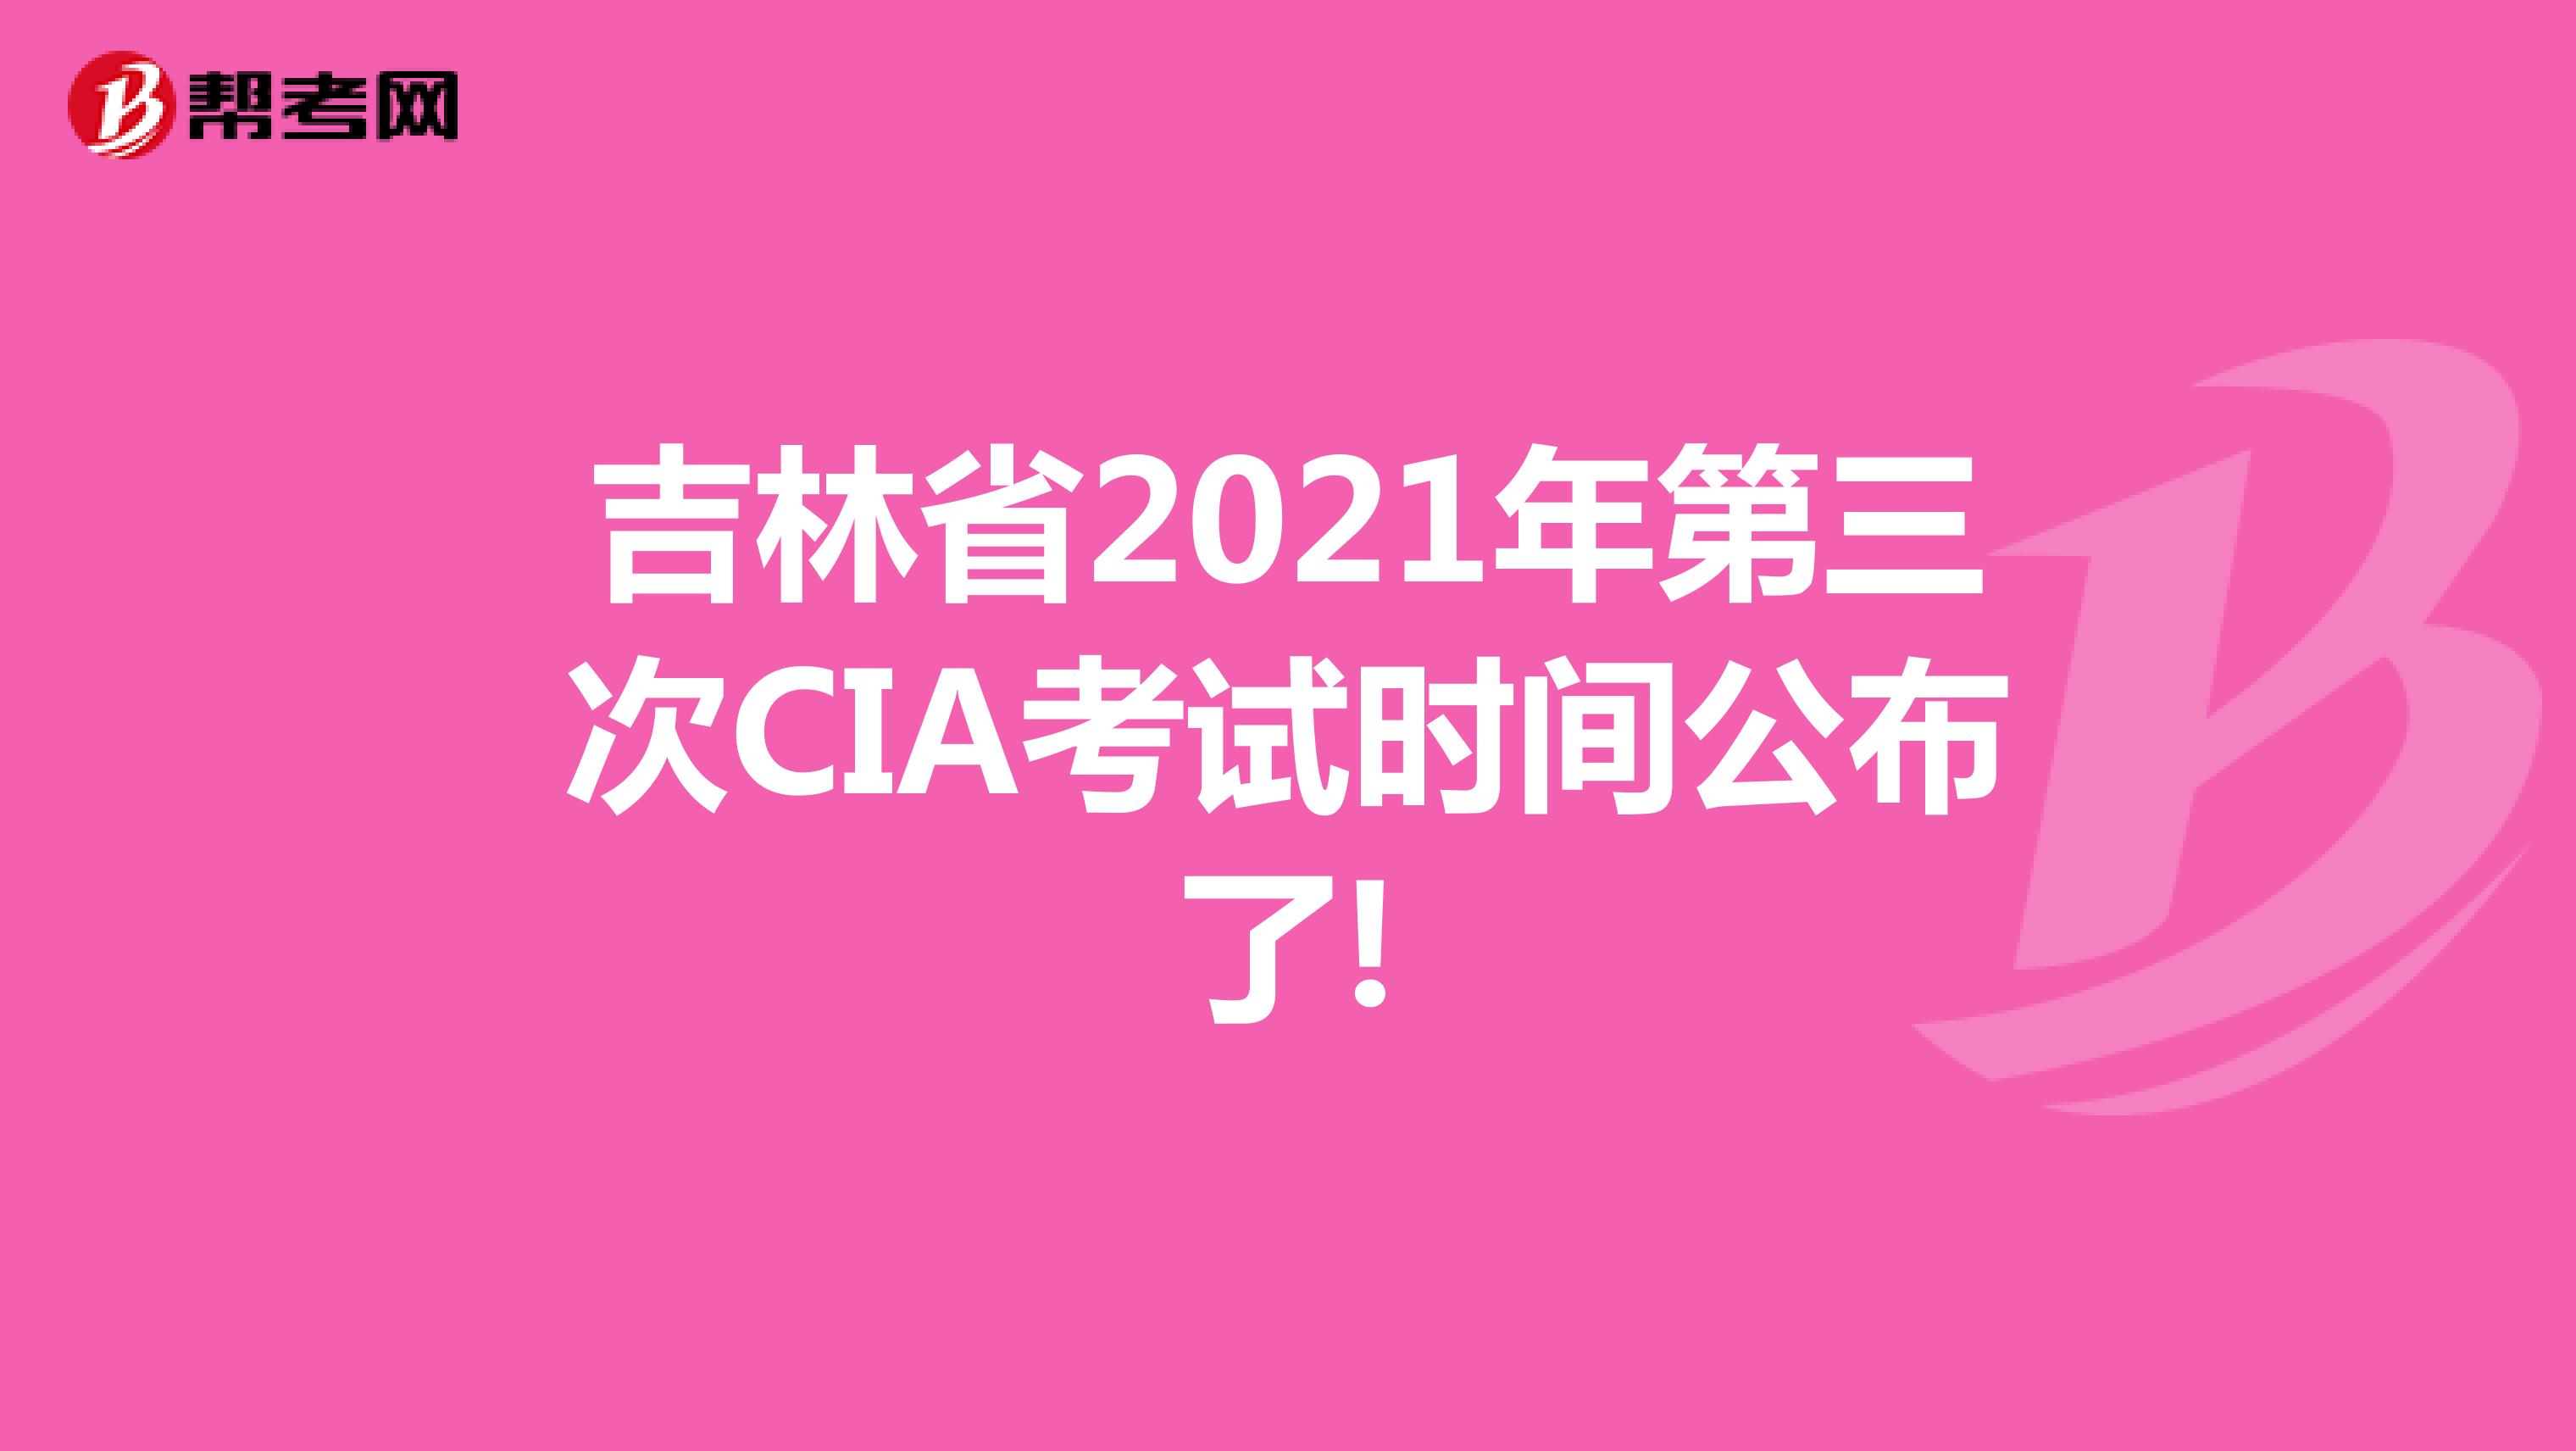 吉林省2021年第三次CIA考试时间公布了!